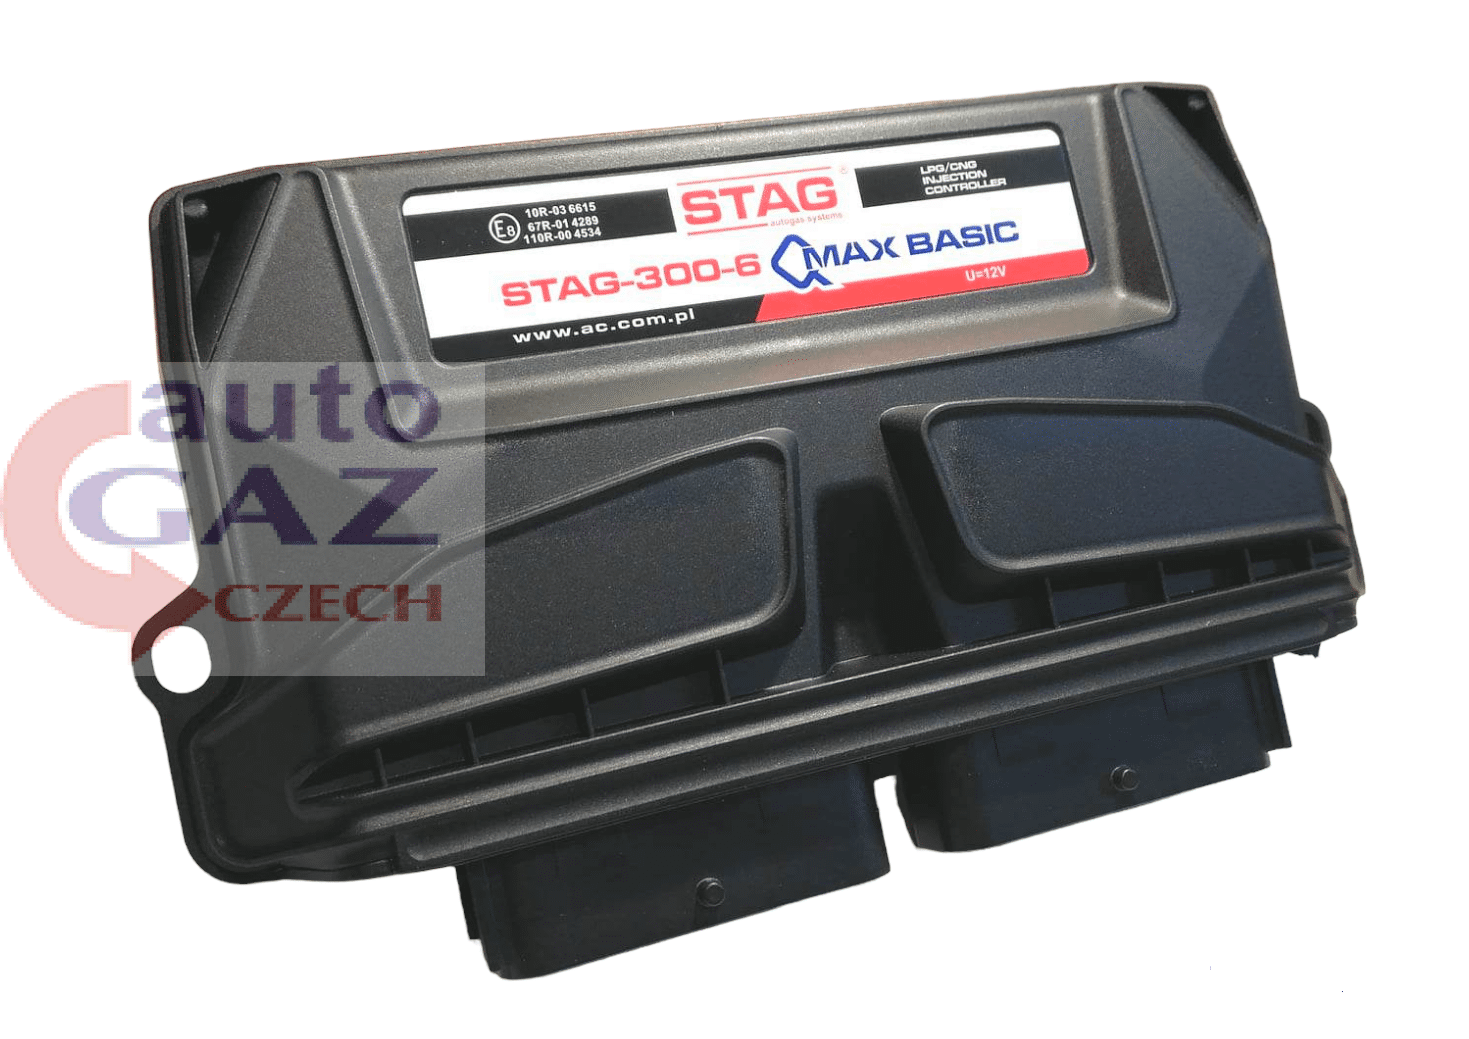 Sterownik komputer STAG-300-6 QMAX BASIC